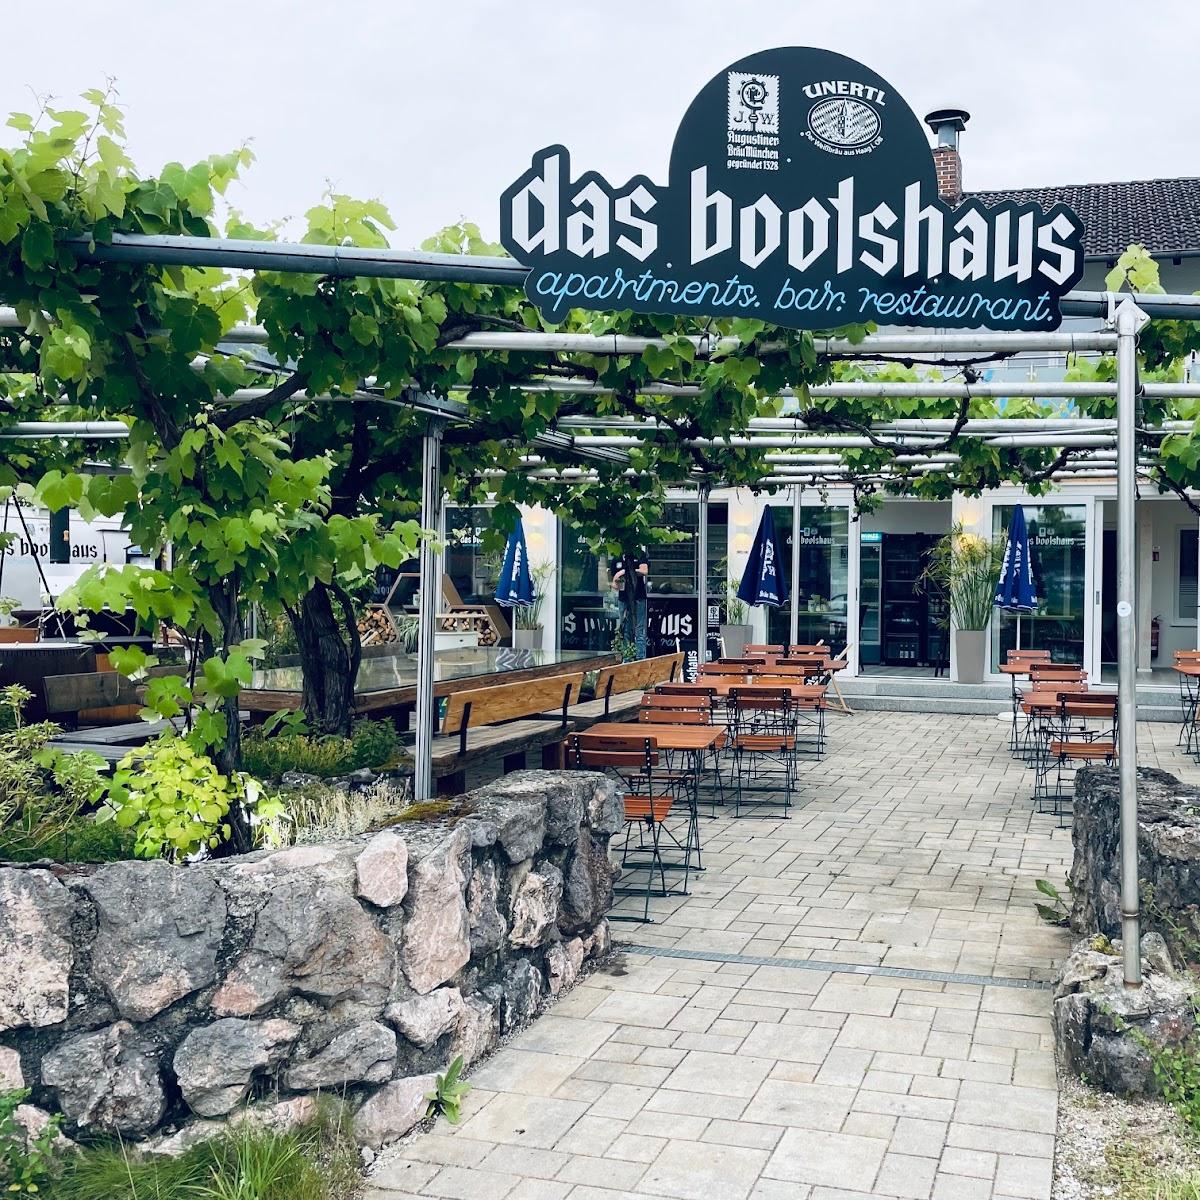 Restaurant "Das Bootshaus" in Seeon-Seebruck